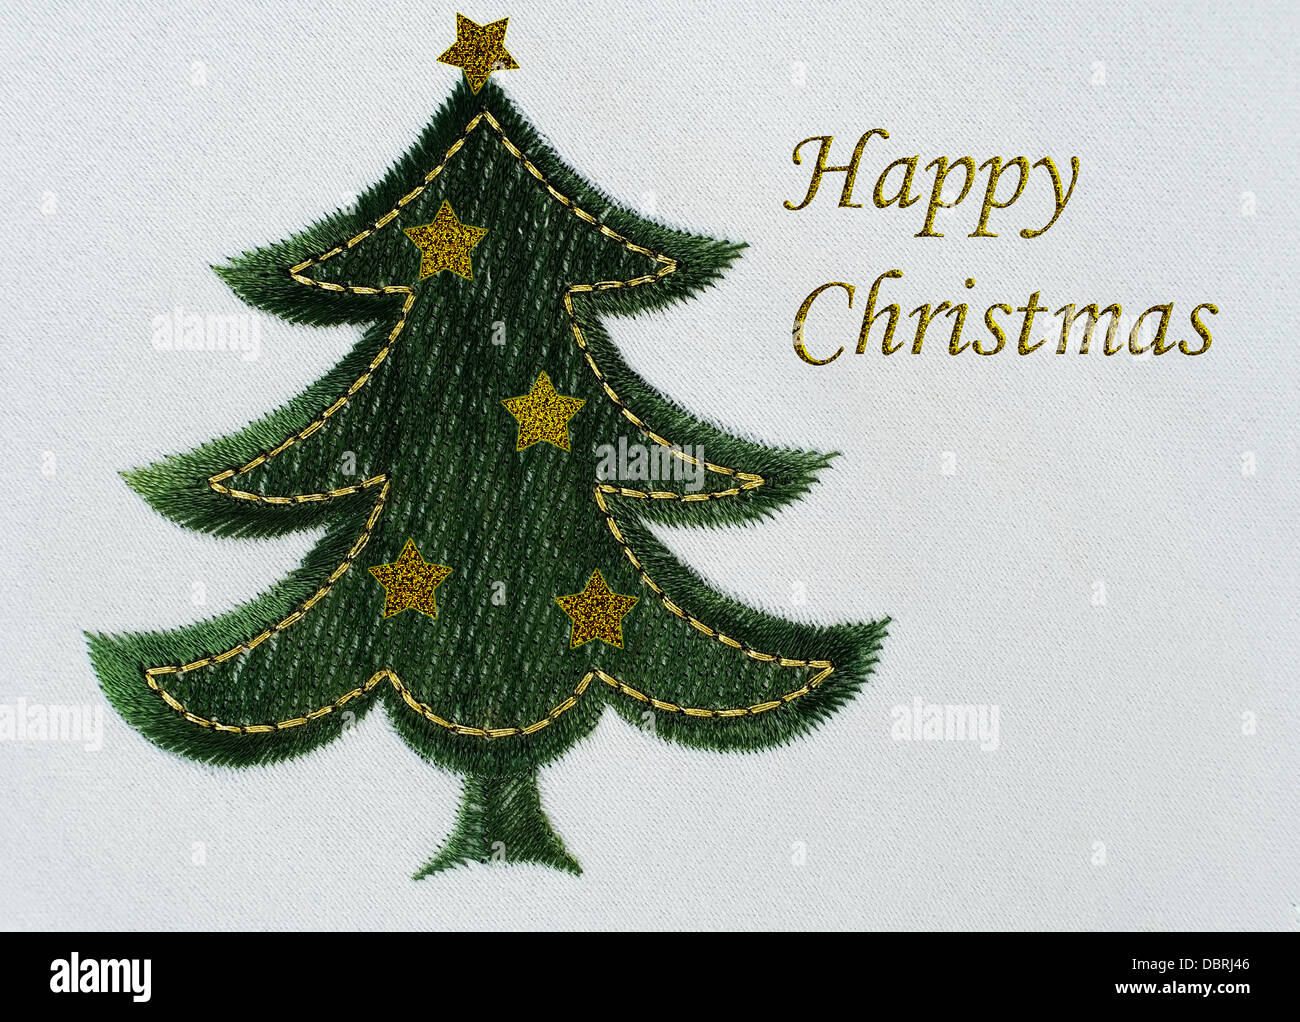 Maschine bestickt Weihnachtsbaum mit Glitzer-Formulierung. Stockfoto